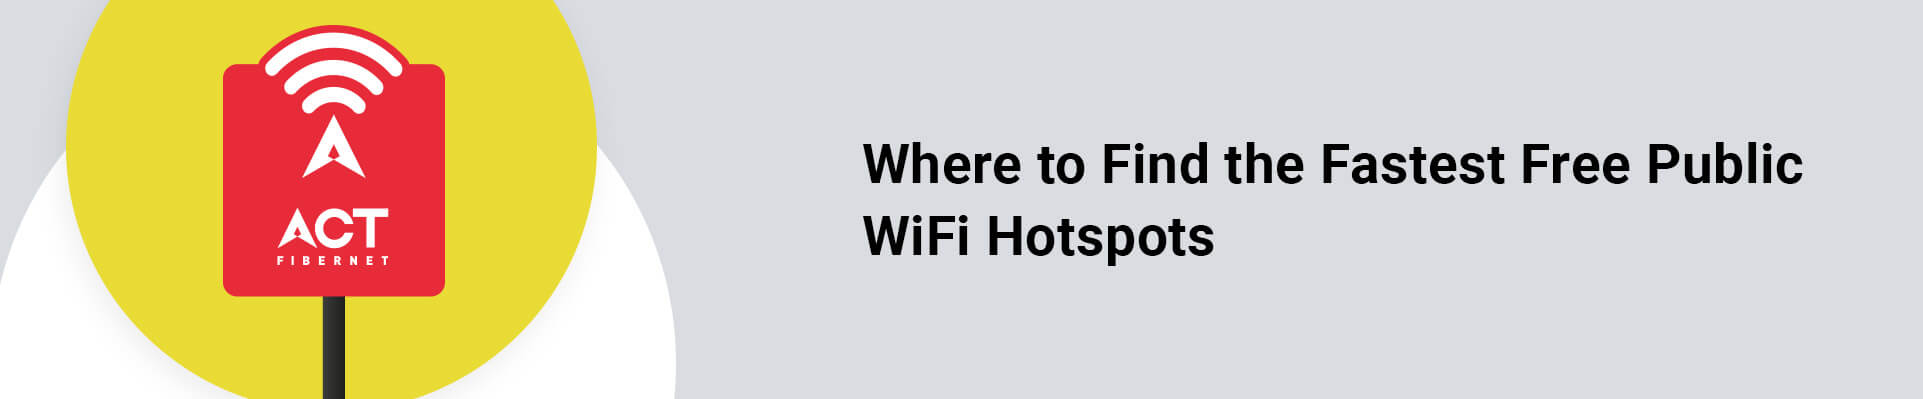 Best Free Wi-Fi in India